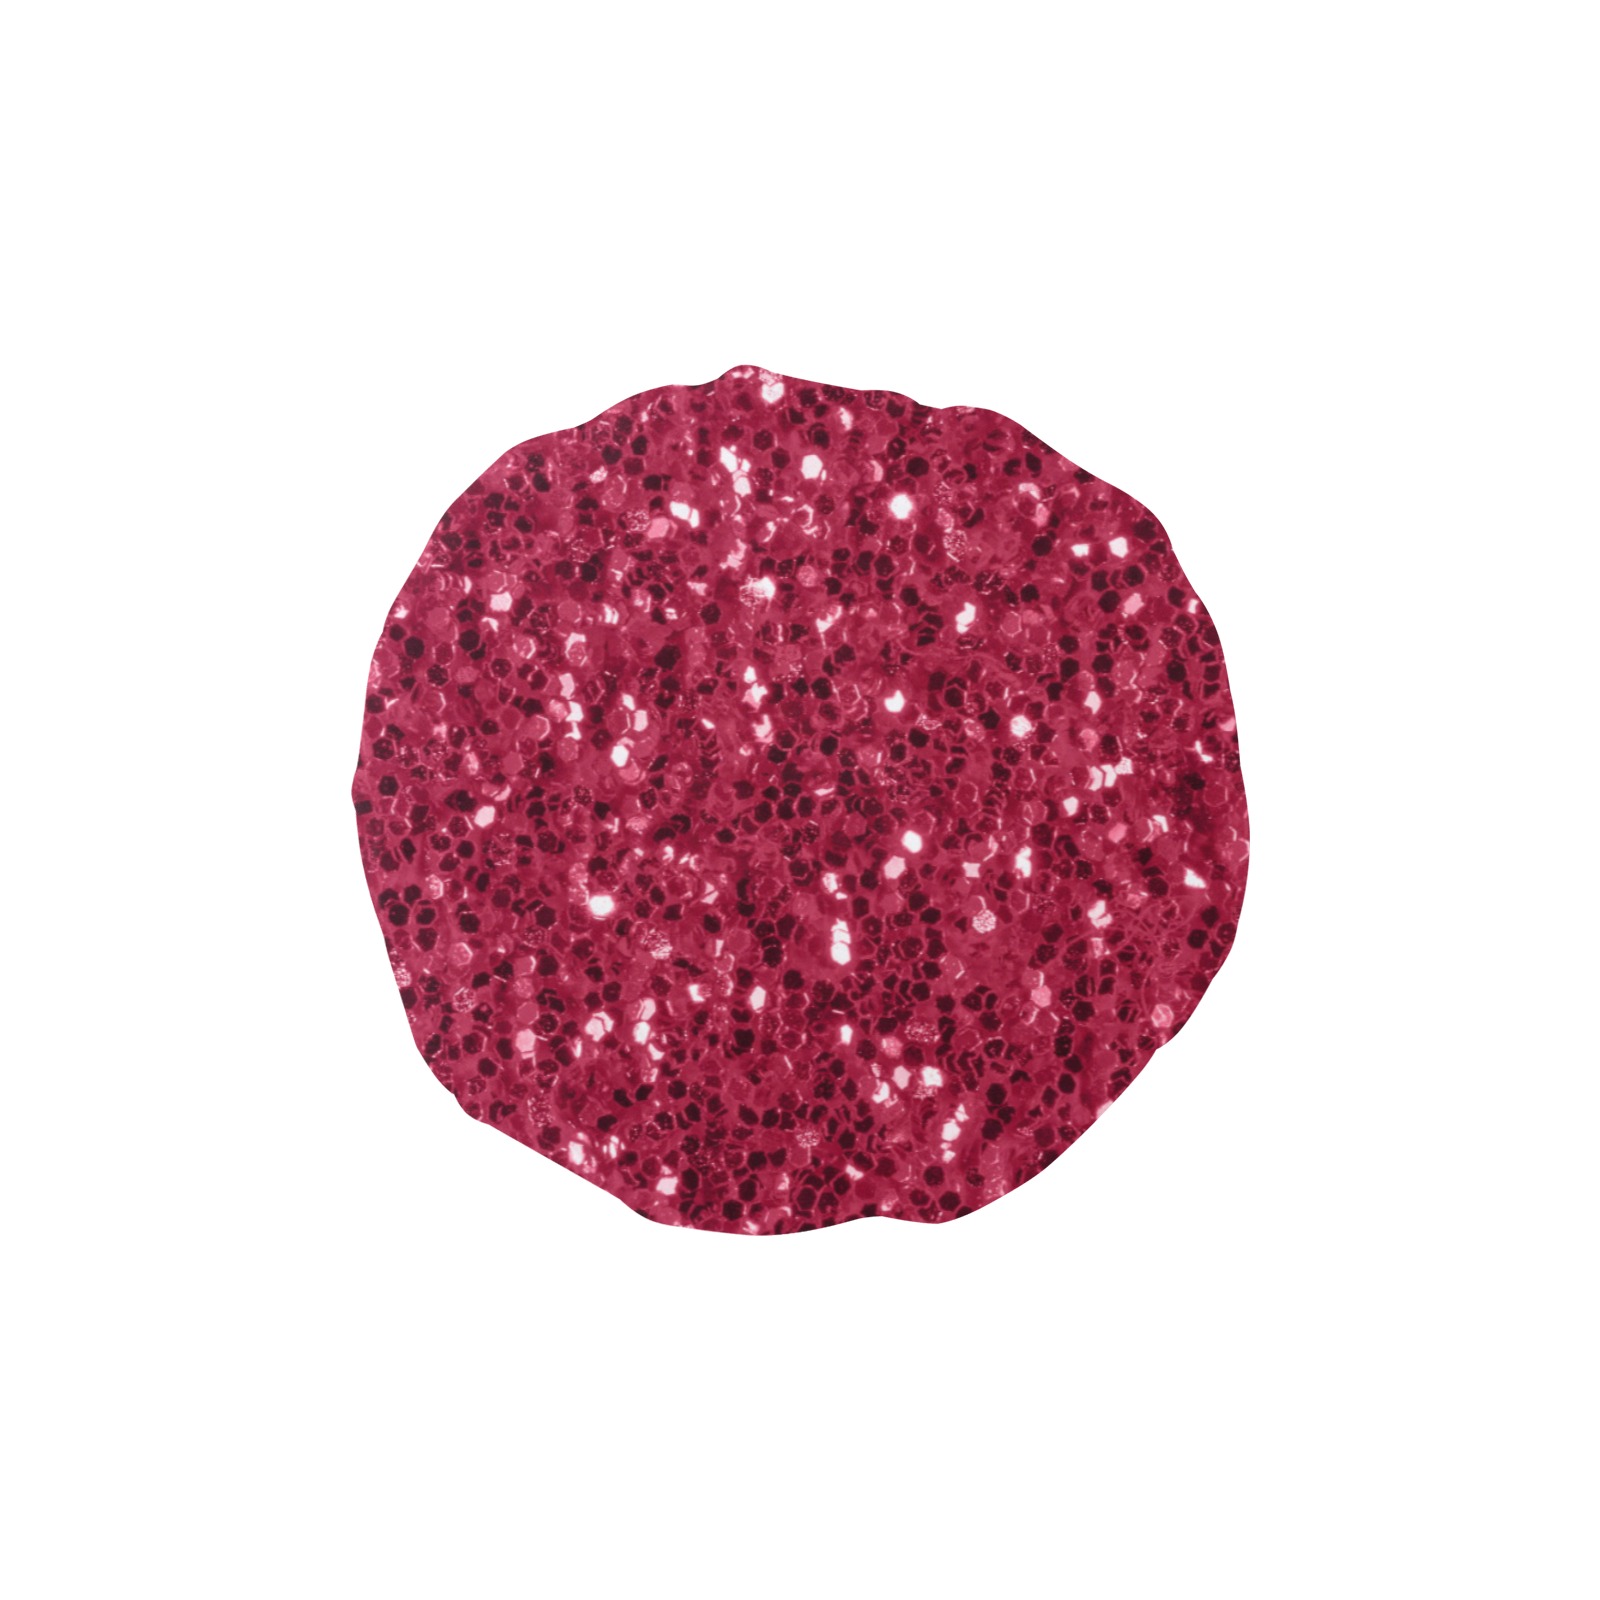 Magenta dark pink red faux sparkles glitter Shower Cap